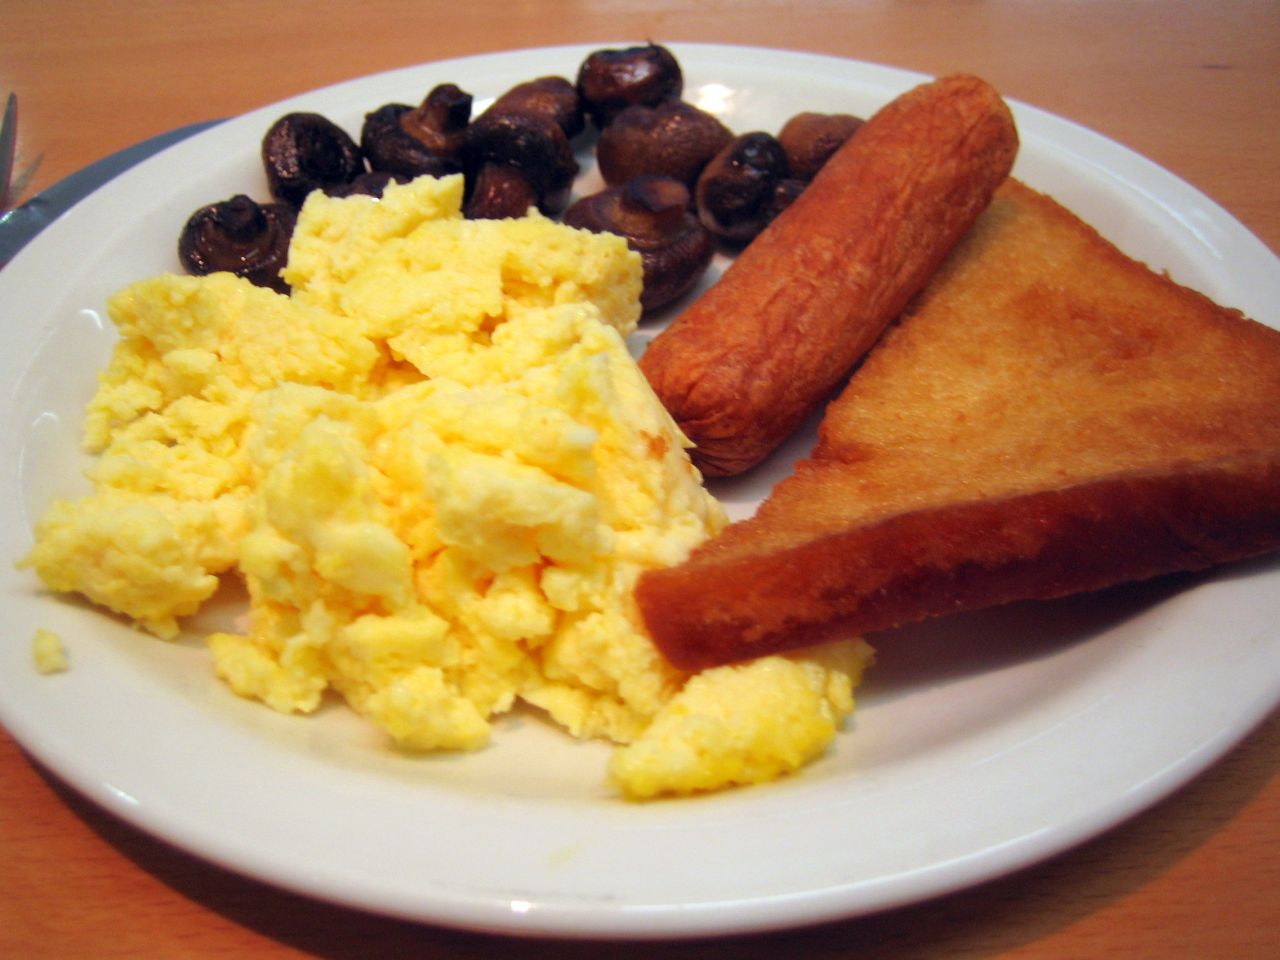 Zdrowie, styl życia i dieta - śniadanie mistrzów